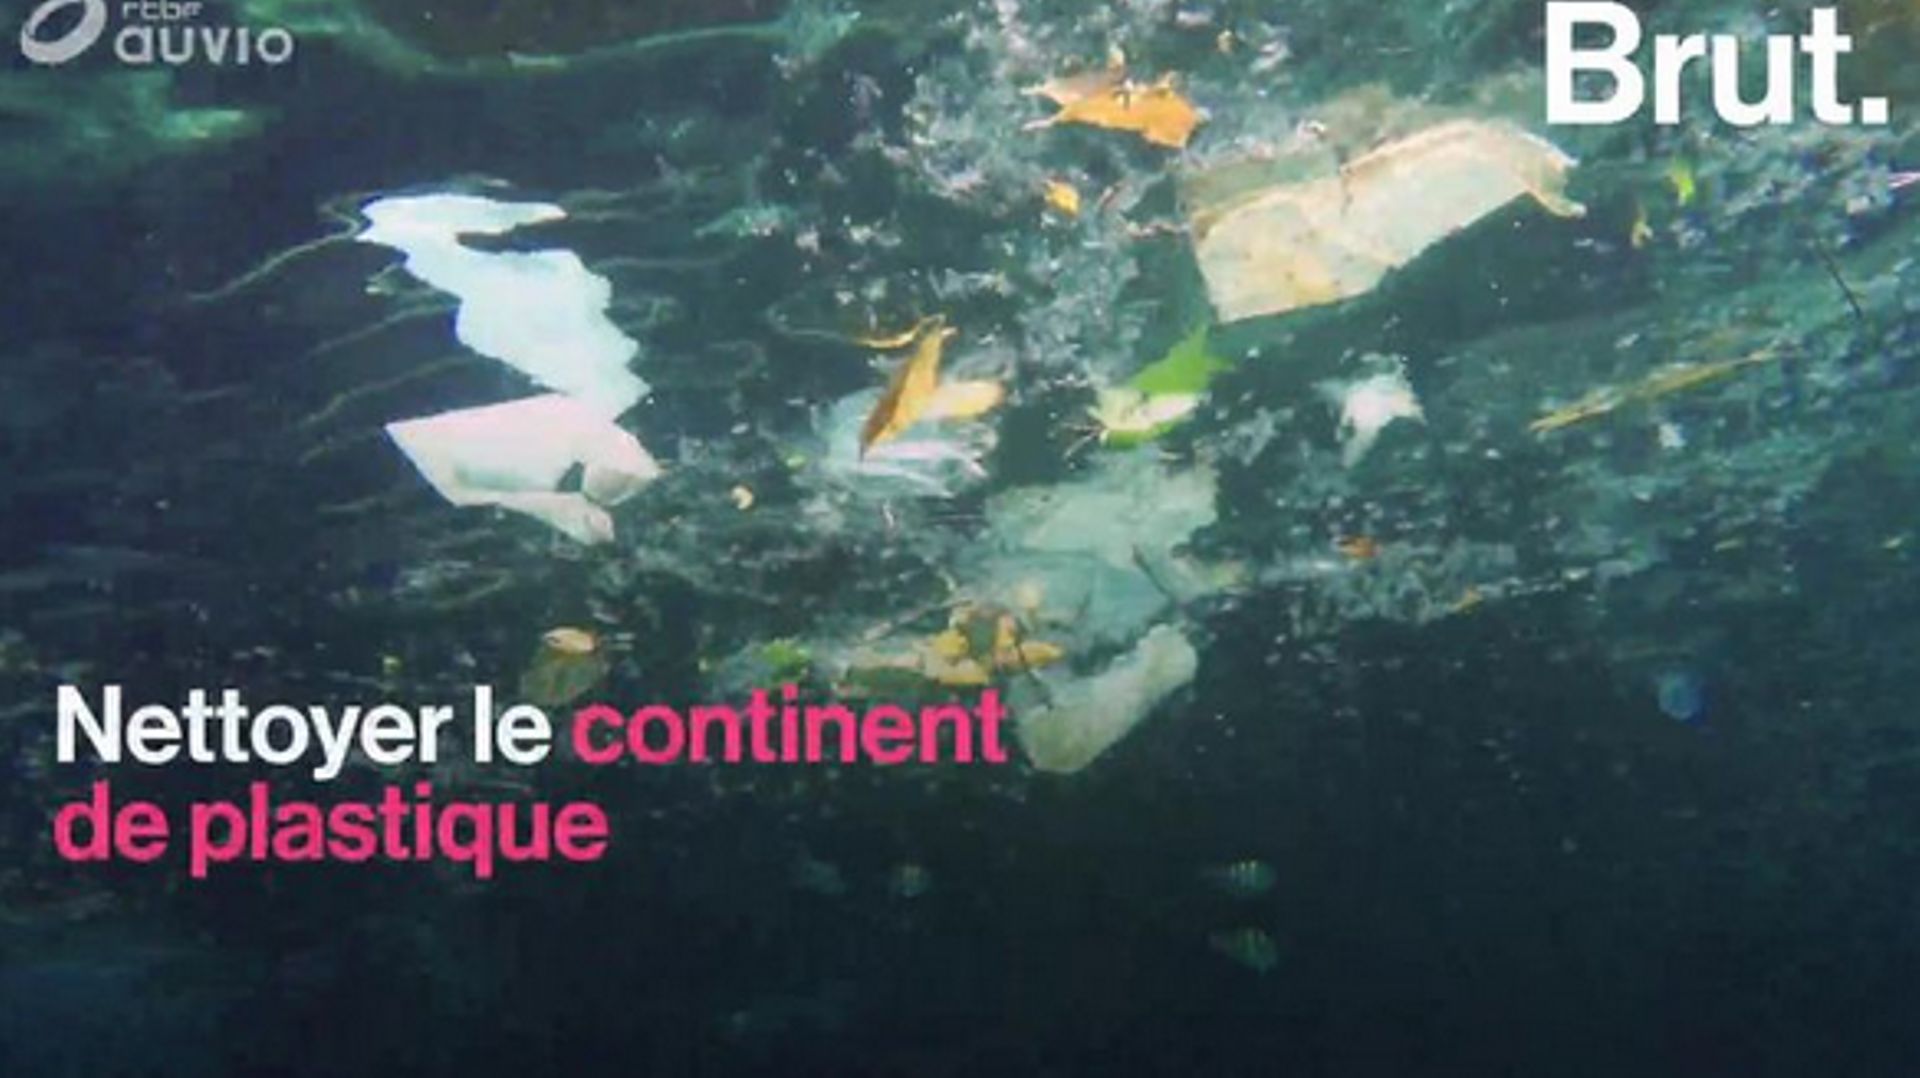 Pourquoi le nettoyage du continent de plastique s'avère bien plus compliqué que prévu?